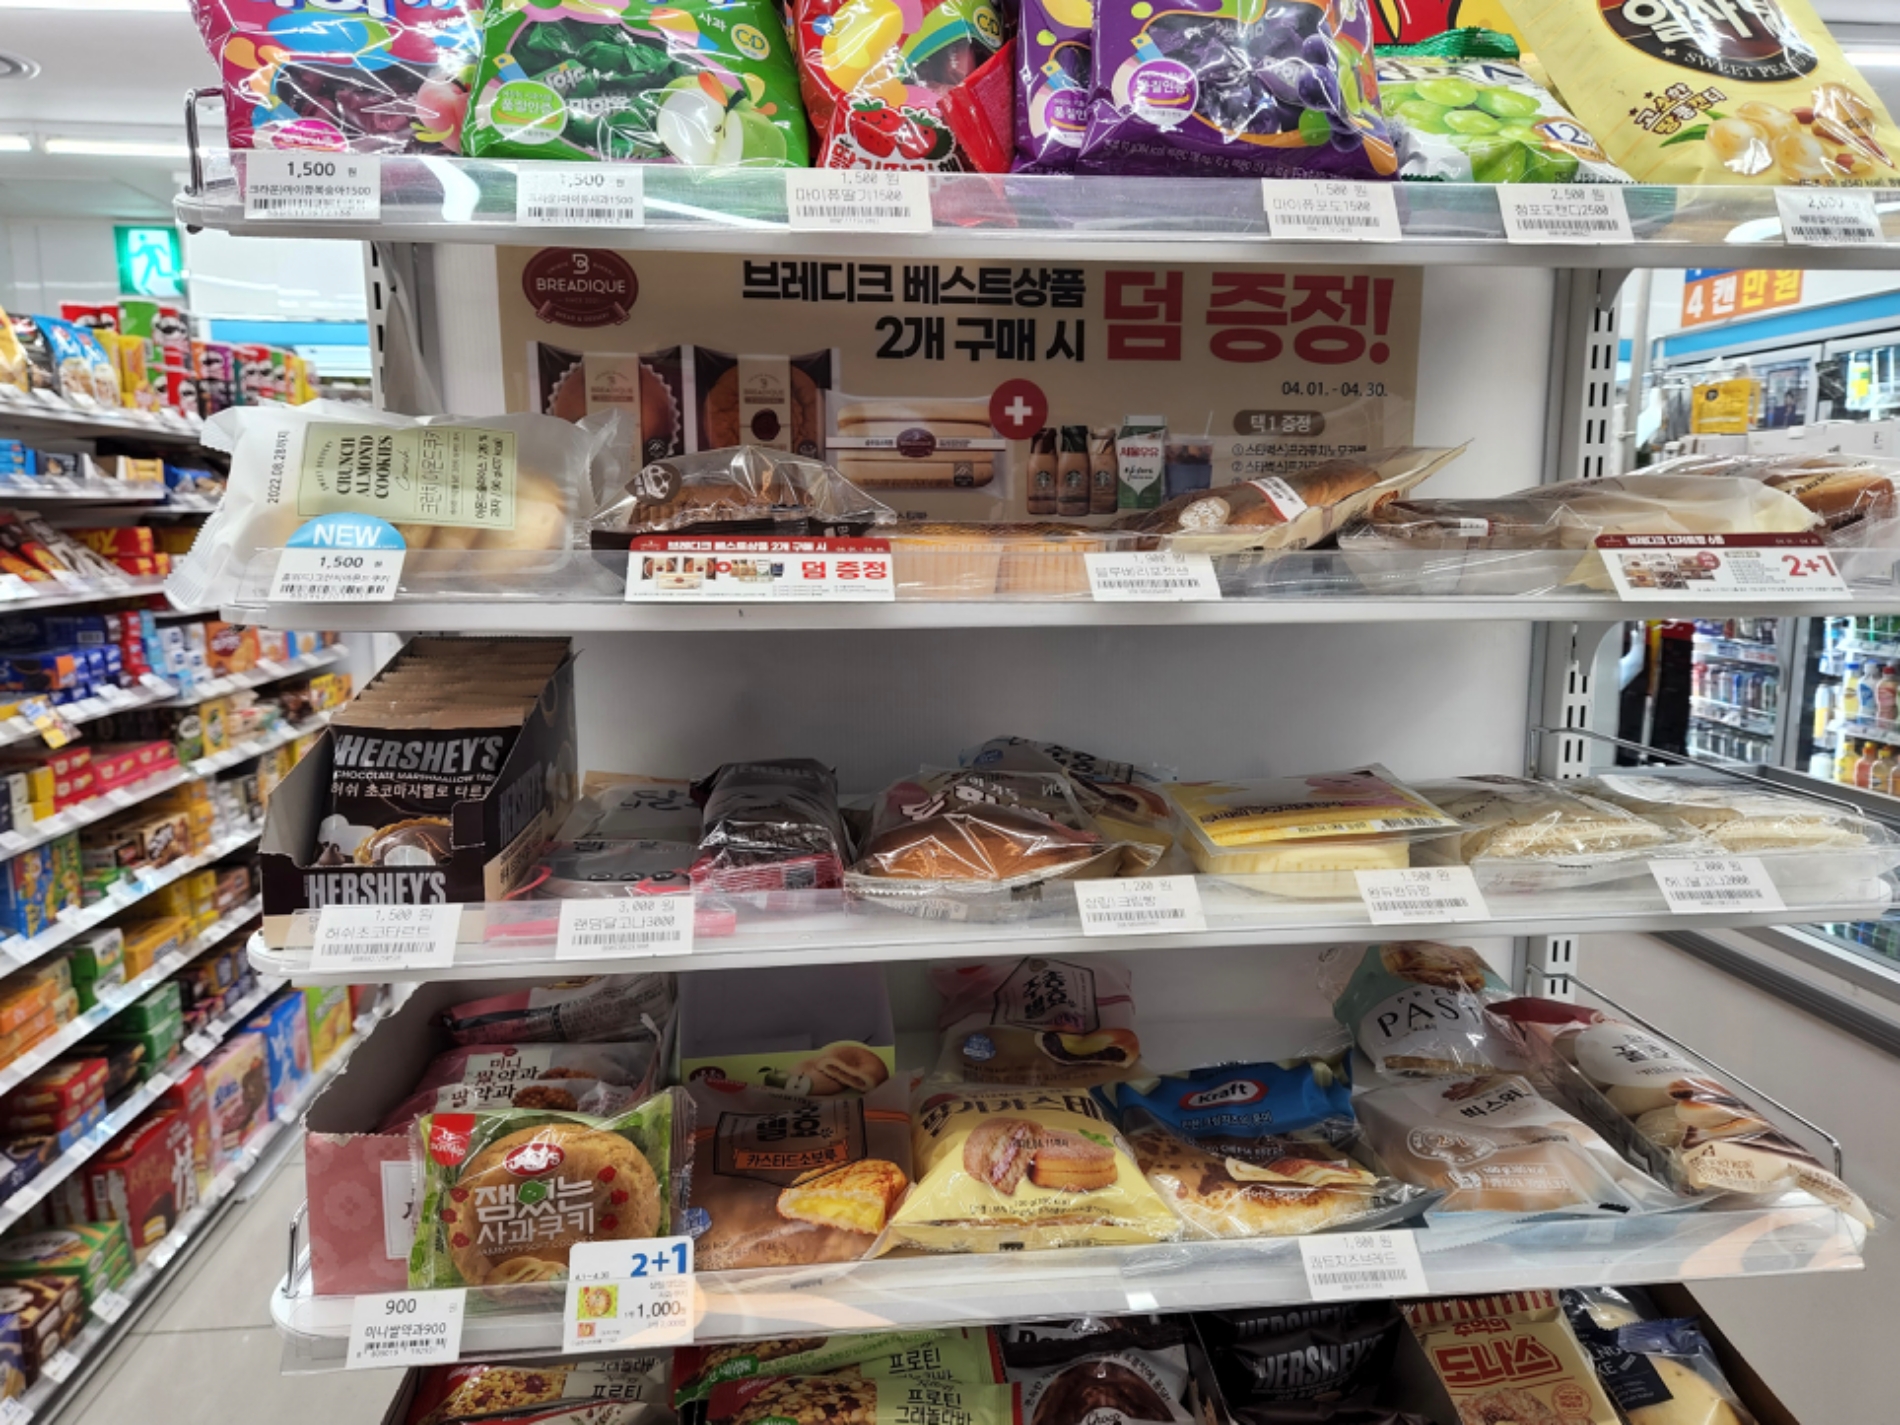 포켓몬 빵이 흥행하자 편의점 등 오프라인 매장에서는 품귀 현상이 일어났다. 사진은 서울의 한 편의점에서 포켓몬 빵을 찾을 수 없는 모습./사진=나선혜기자 